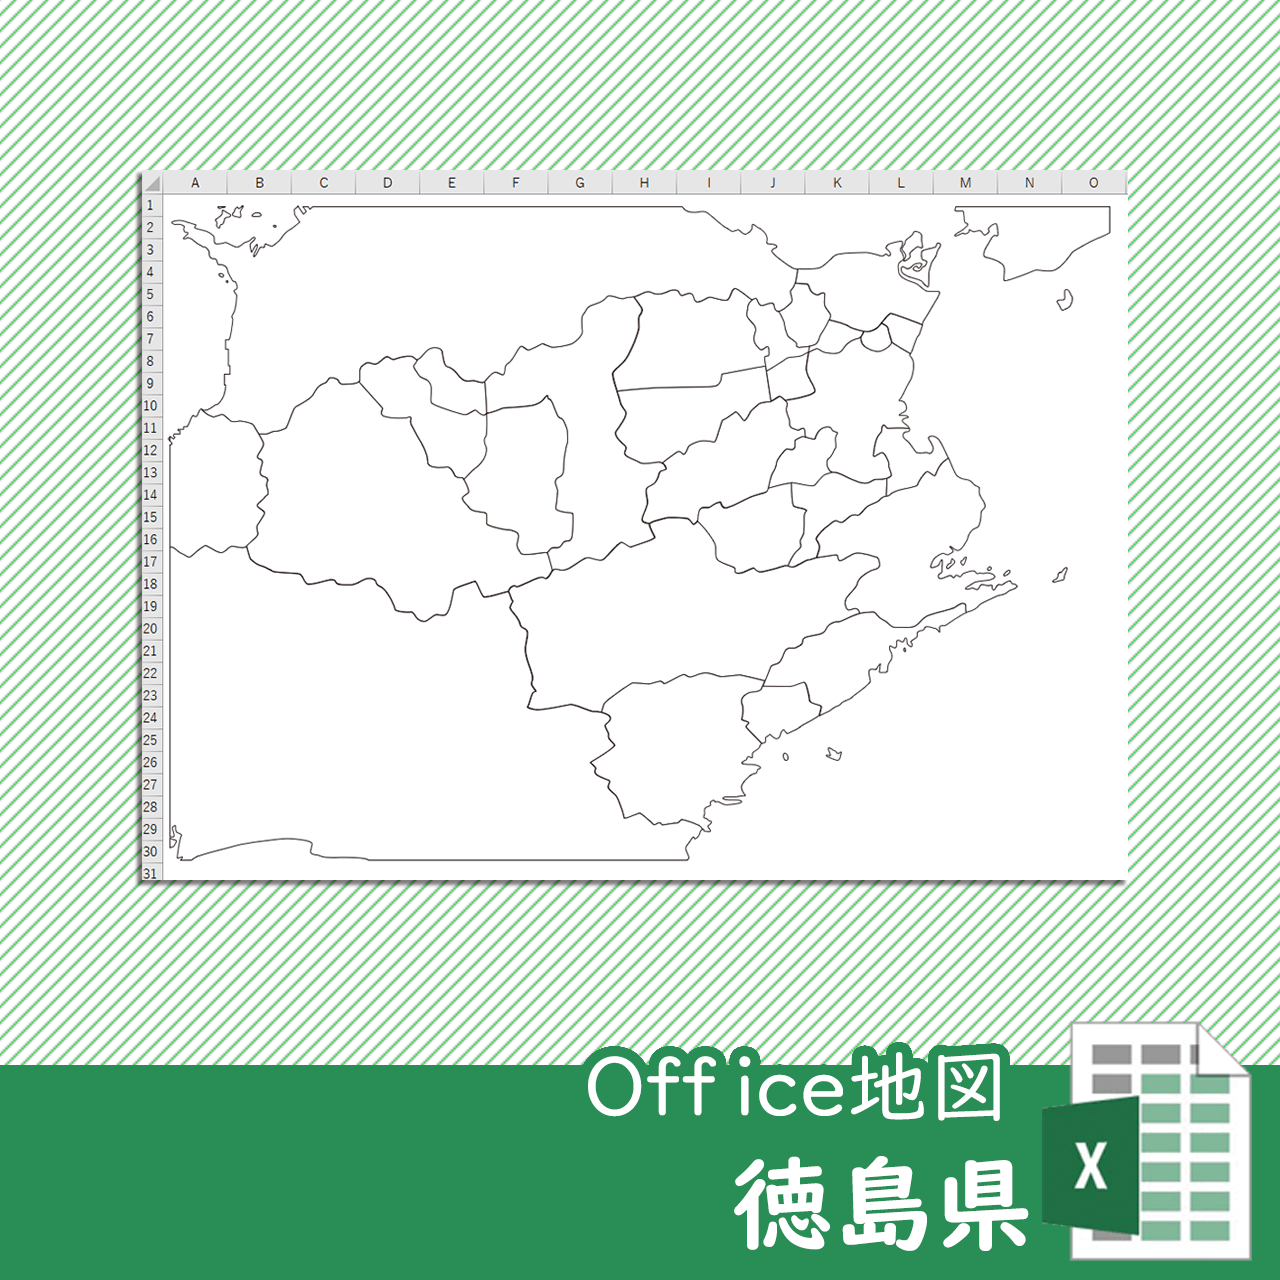 徳島県のOffice地図のサムネイル